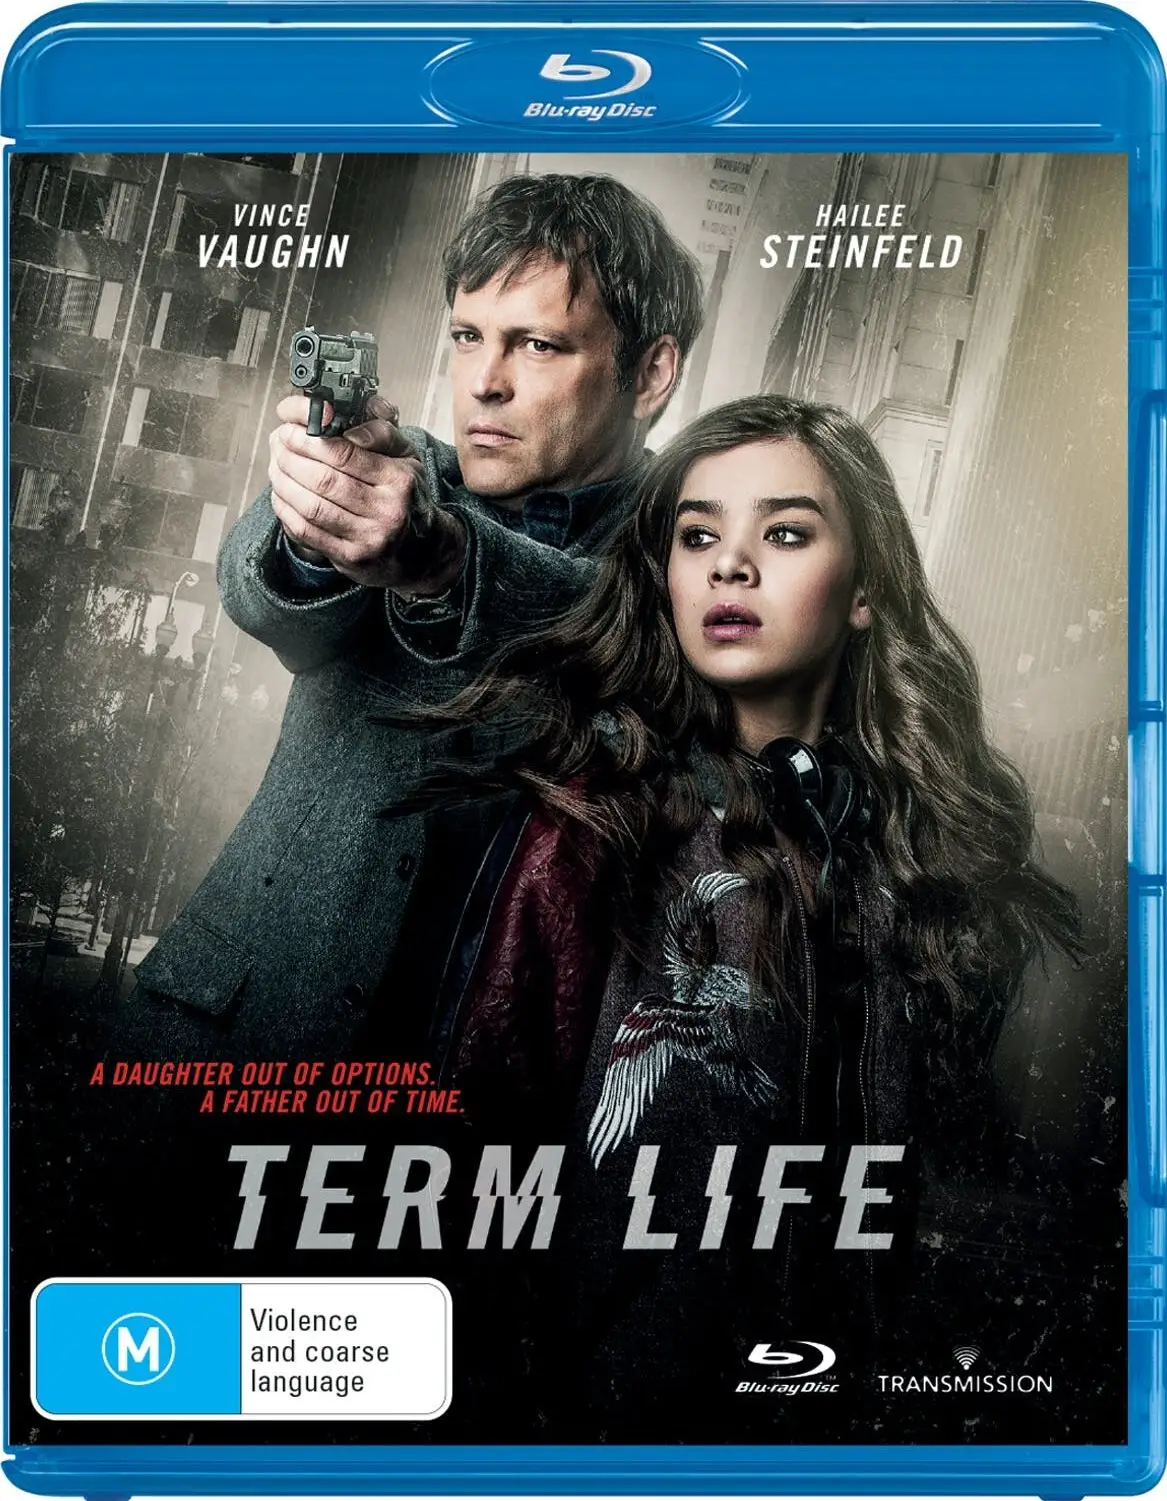 Term Life 2016 poster. Term life